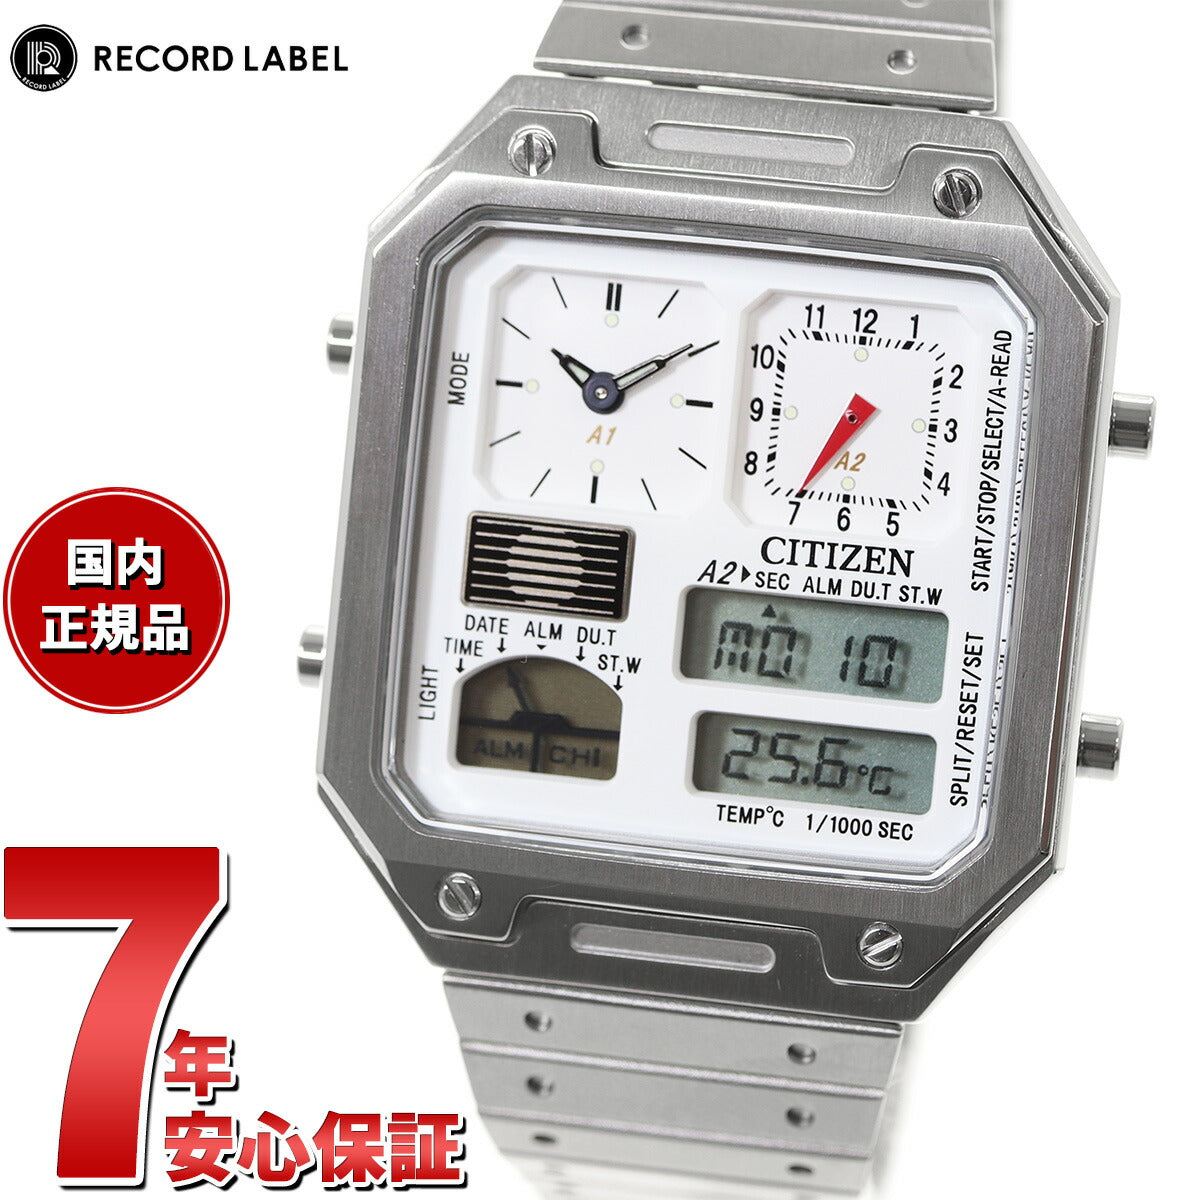 11,499円CITIZEN レコードレーベル RECORD LABEL JG2120-65A